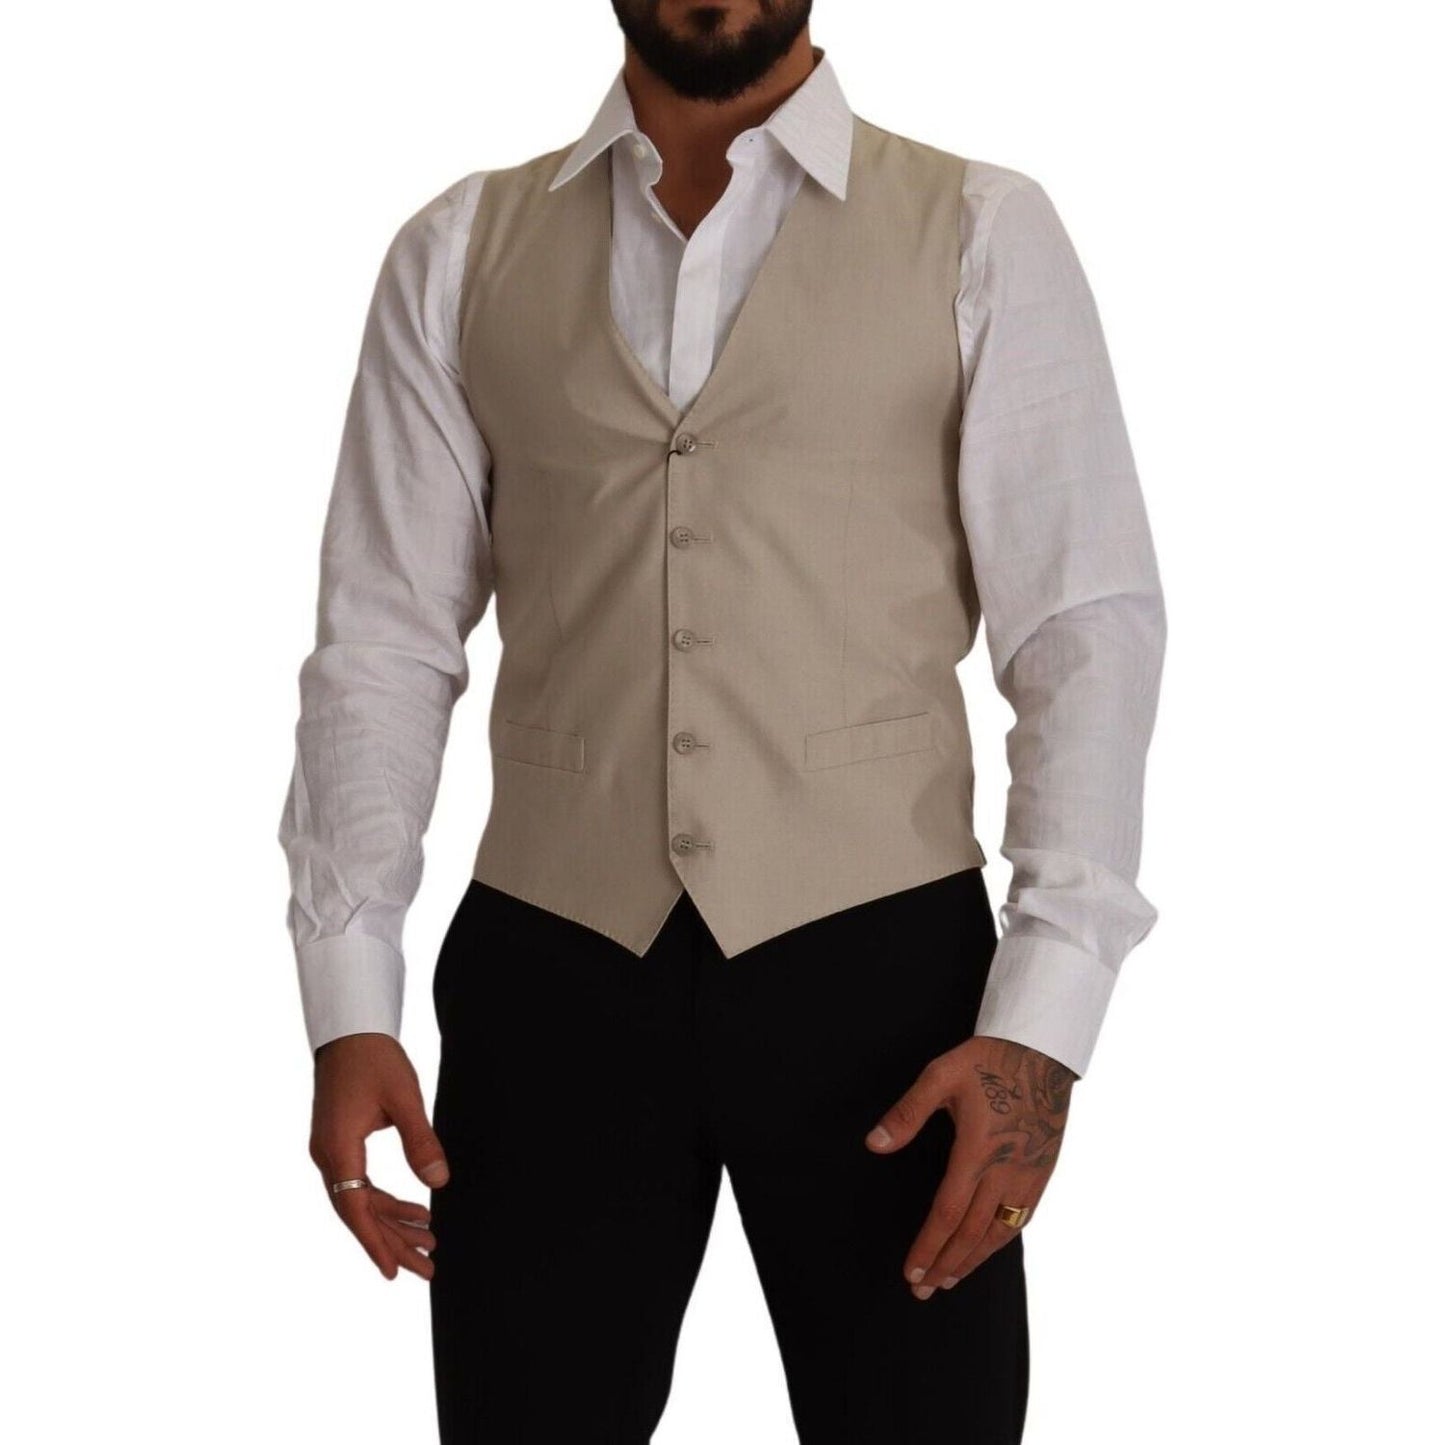 Dolce & Gabbana Beige Cotton Silk Formal Dress Vest beige-cotton-silk-slim-fit-waistcoat-vest